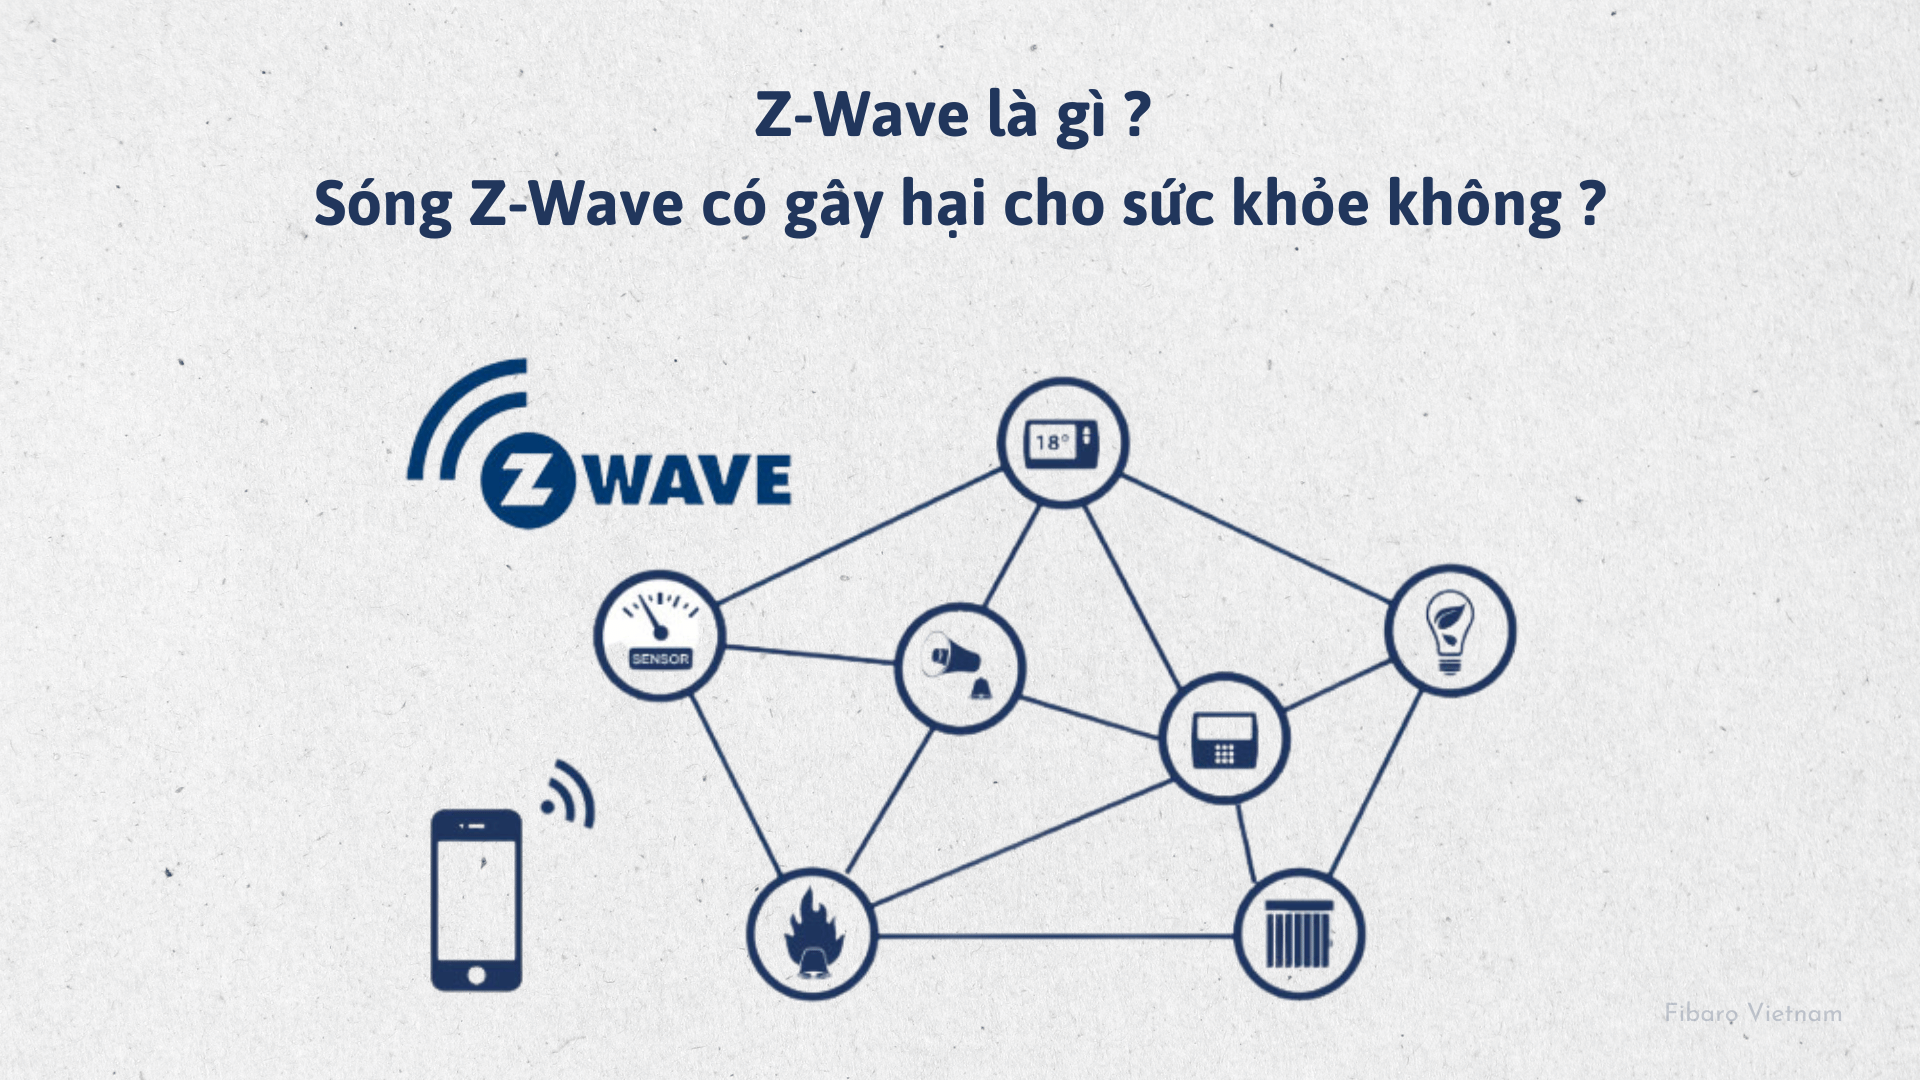 Z-Wave là gì? Sóng Z-Wave có gây hại cho sức khỏe không?